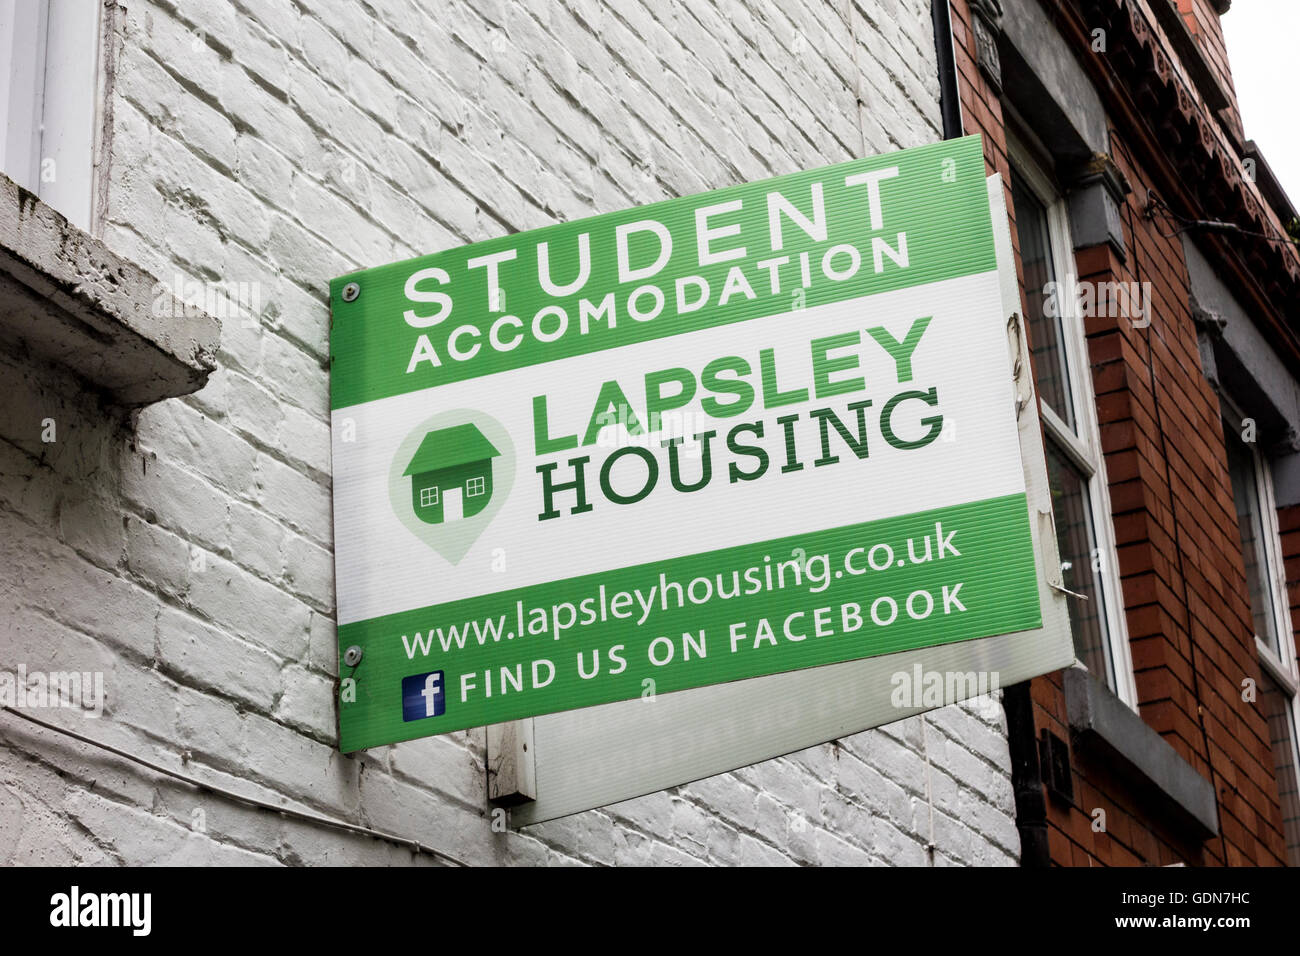 Lapsley Housing Worcester, providing student accommodation and housing in Worcester, Worcestershire, UK Stock Photo